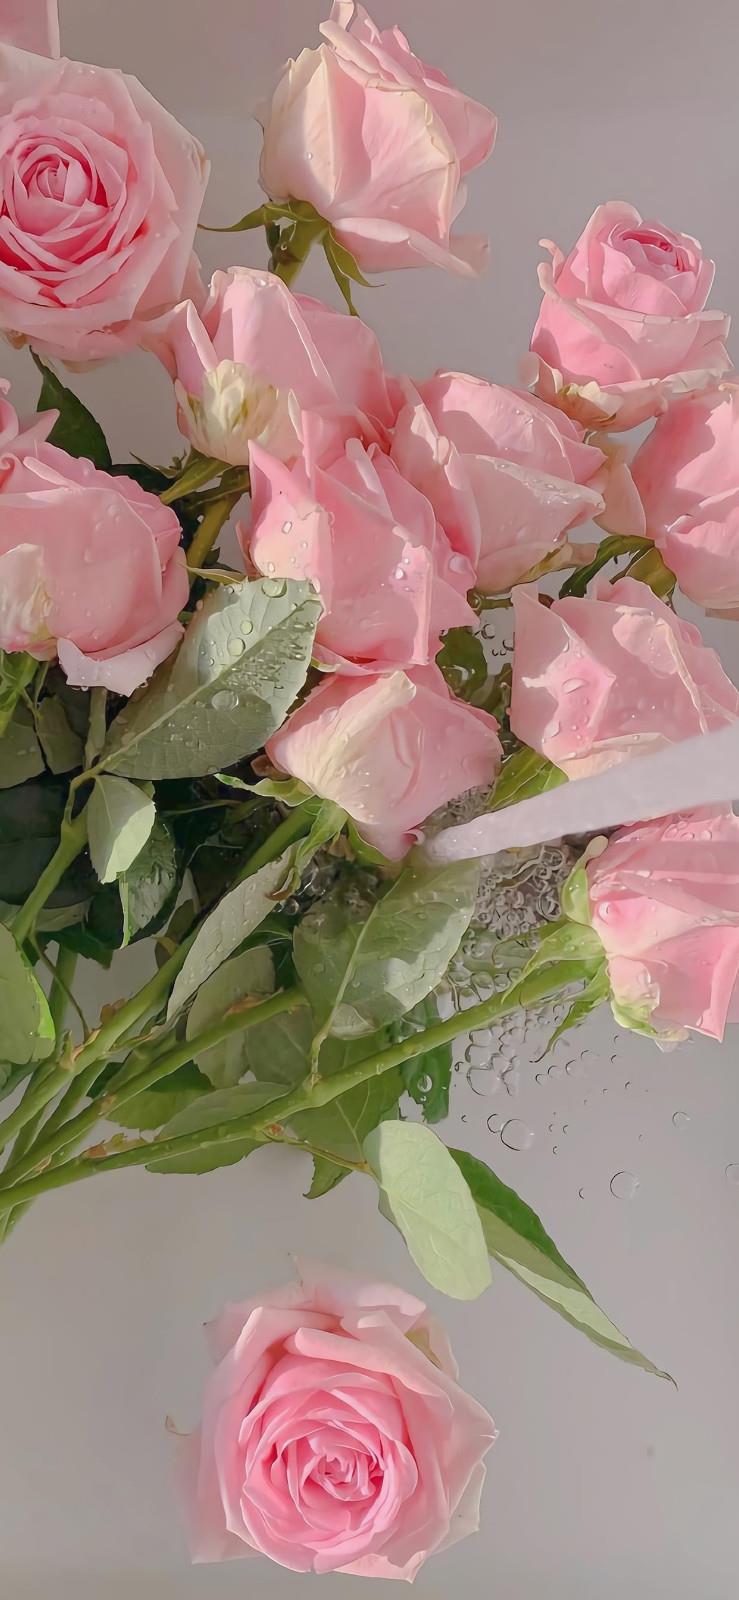 梦幻唯美的粉色花卉主题手机壁纸图片2021